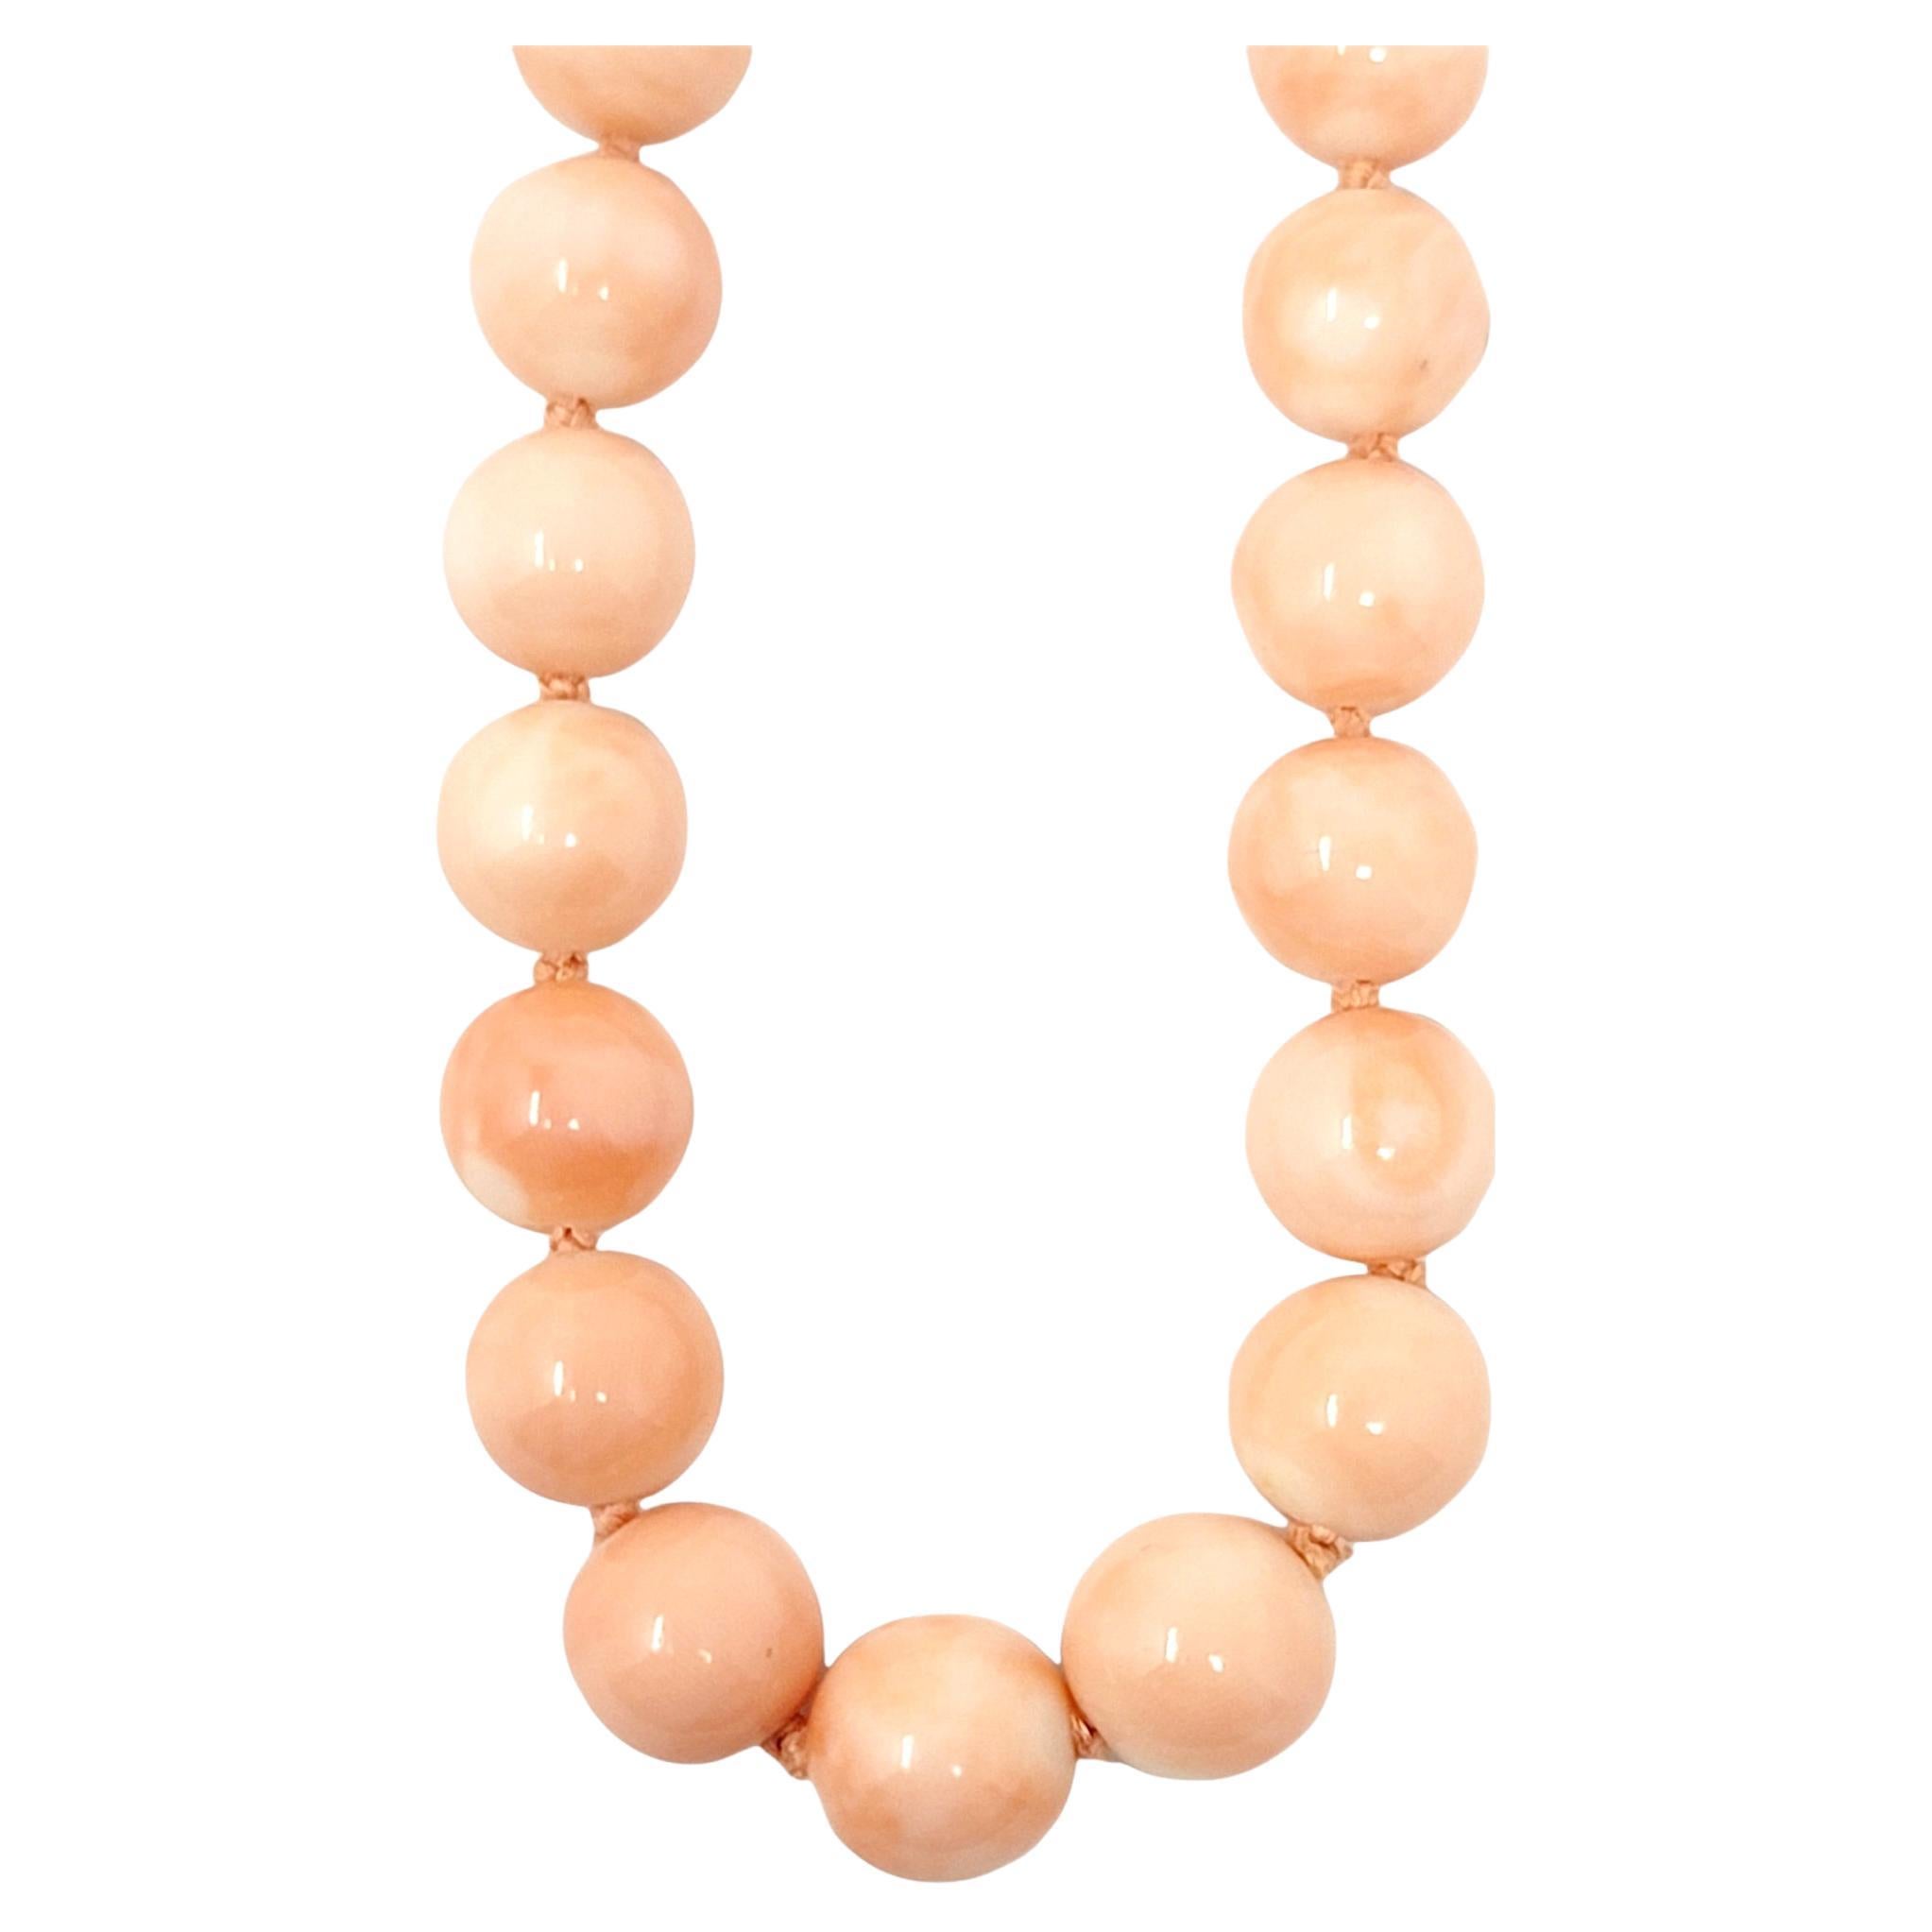 Magnifique collier de perles élégant avec une touche de couleur vive ! Cet incroyable collier de corail naturel est composé d'un seul fil de pierres de corail polies et graduées, d'une superbe couleur rose orangé opaque. La teinte de chaque pierre